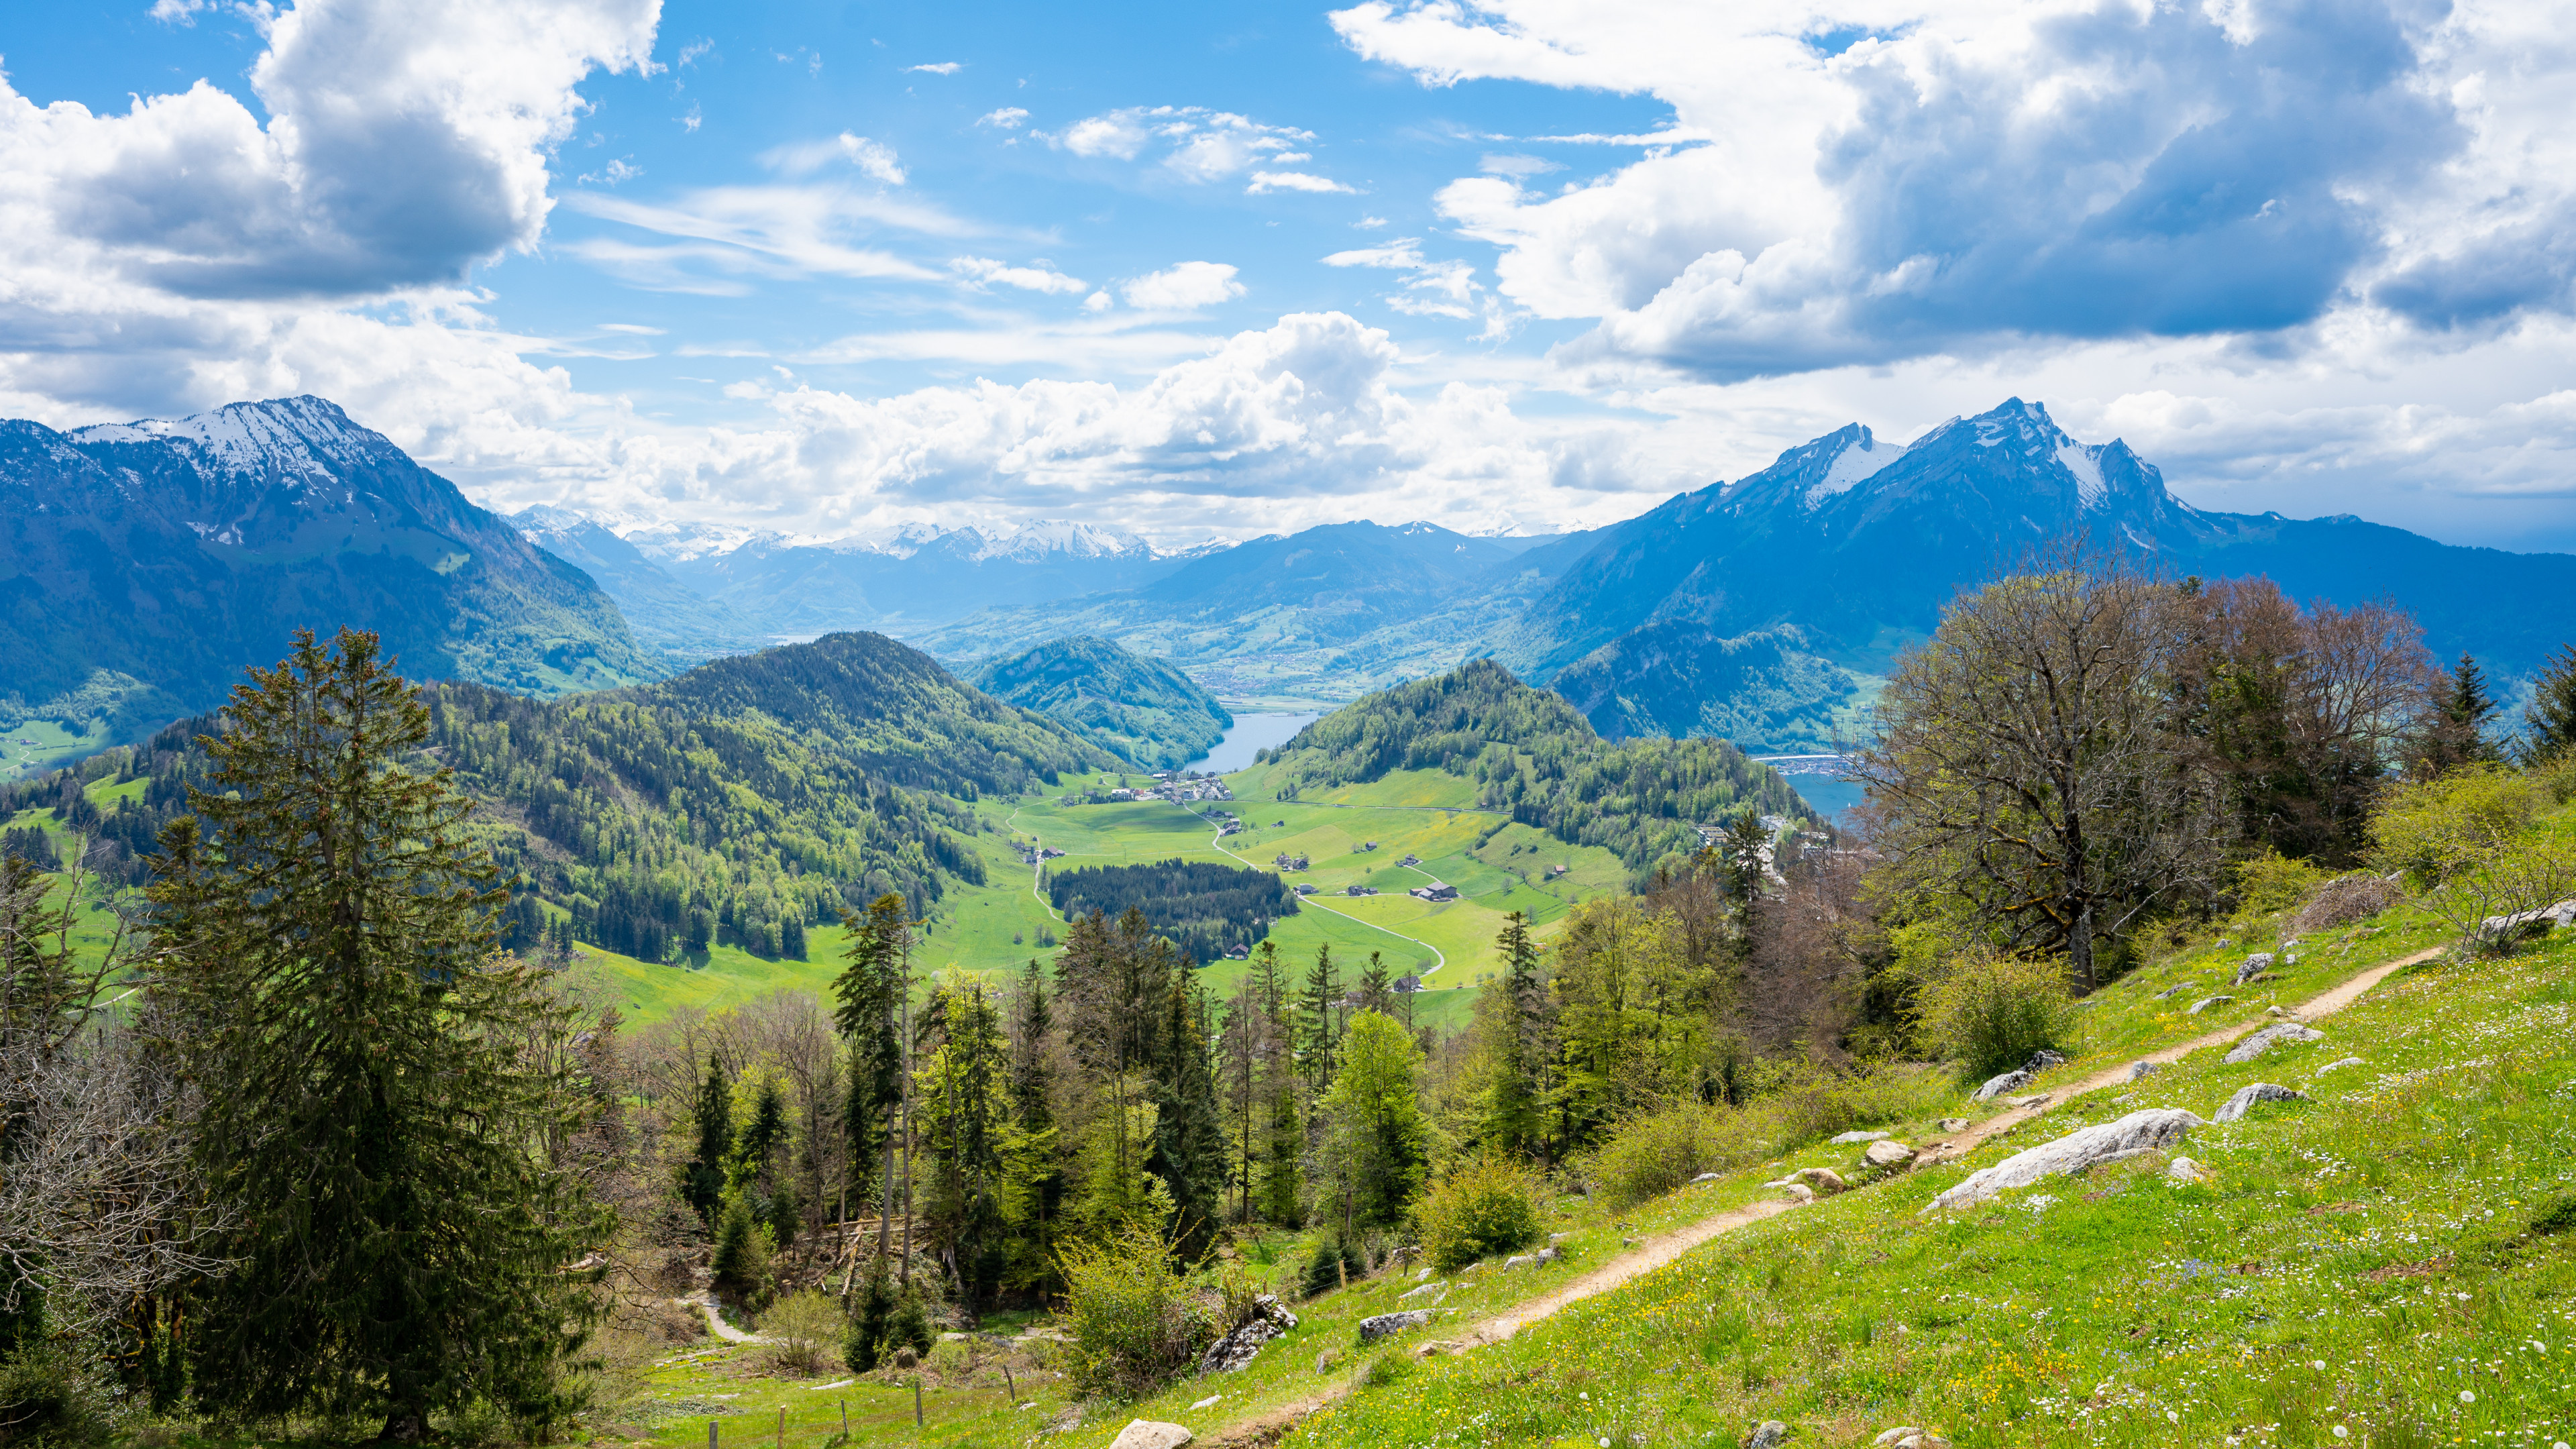 Mount Pilatus, Schweizer bergblick, Switzerland, Obbrgen, 3840x2160 4K Desktop